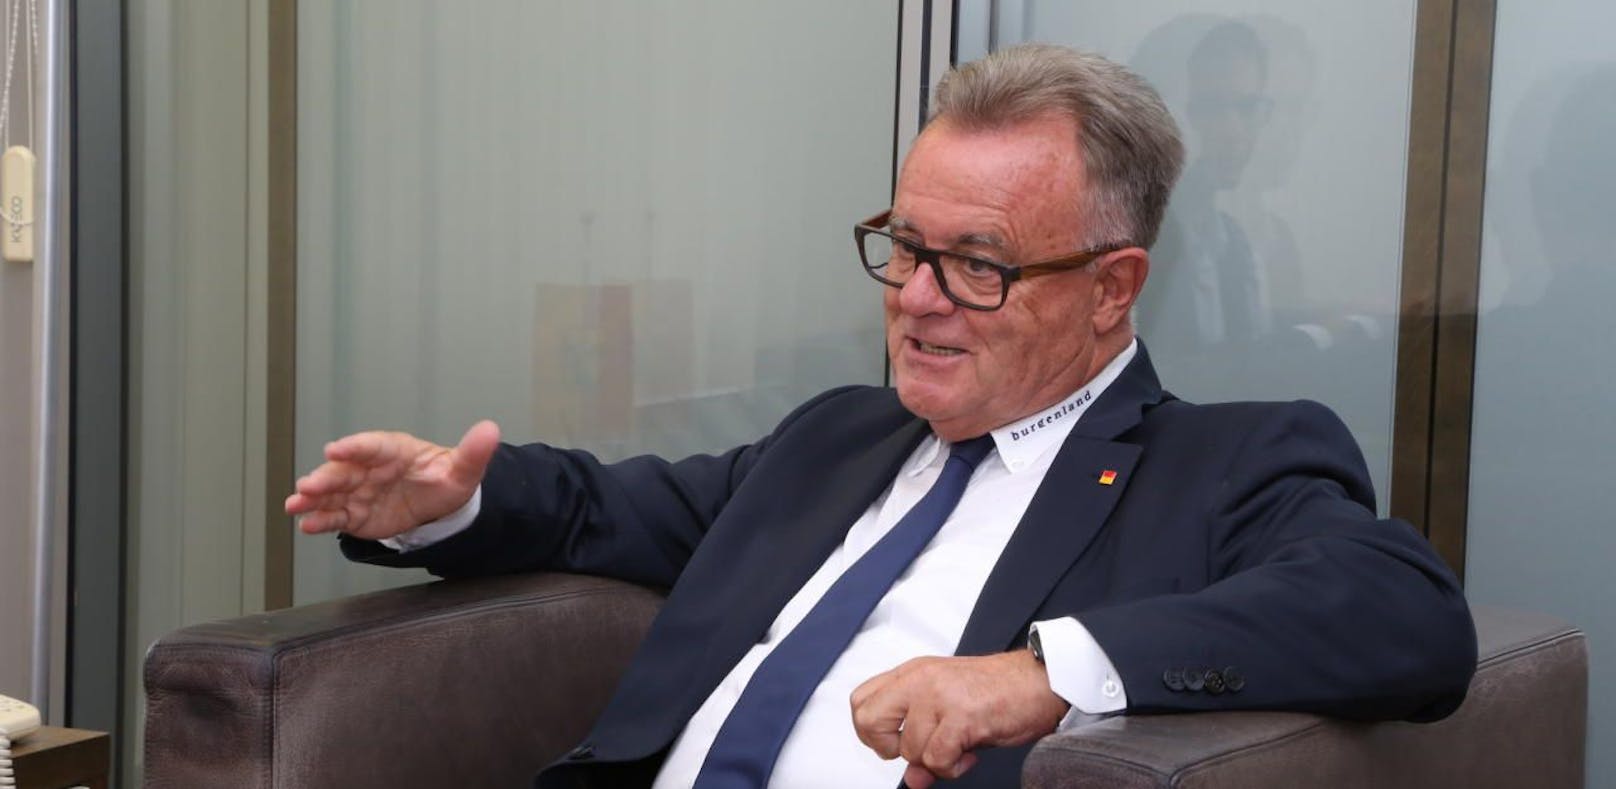 Burgenlands Landeschef Hans Niessl soll gegen VdB antreten.